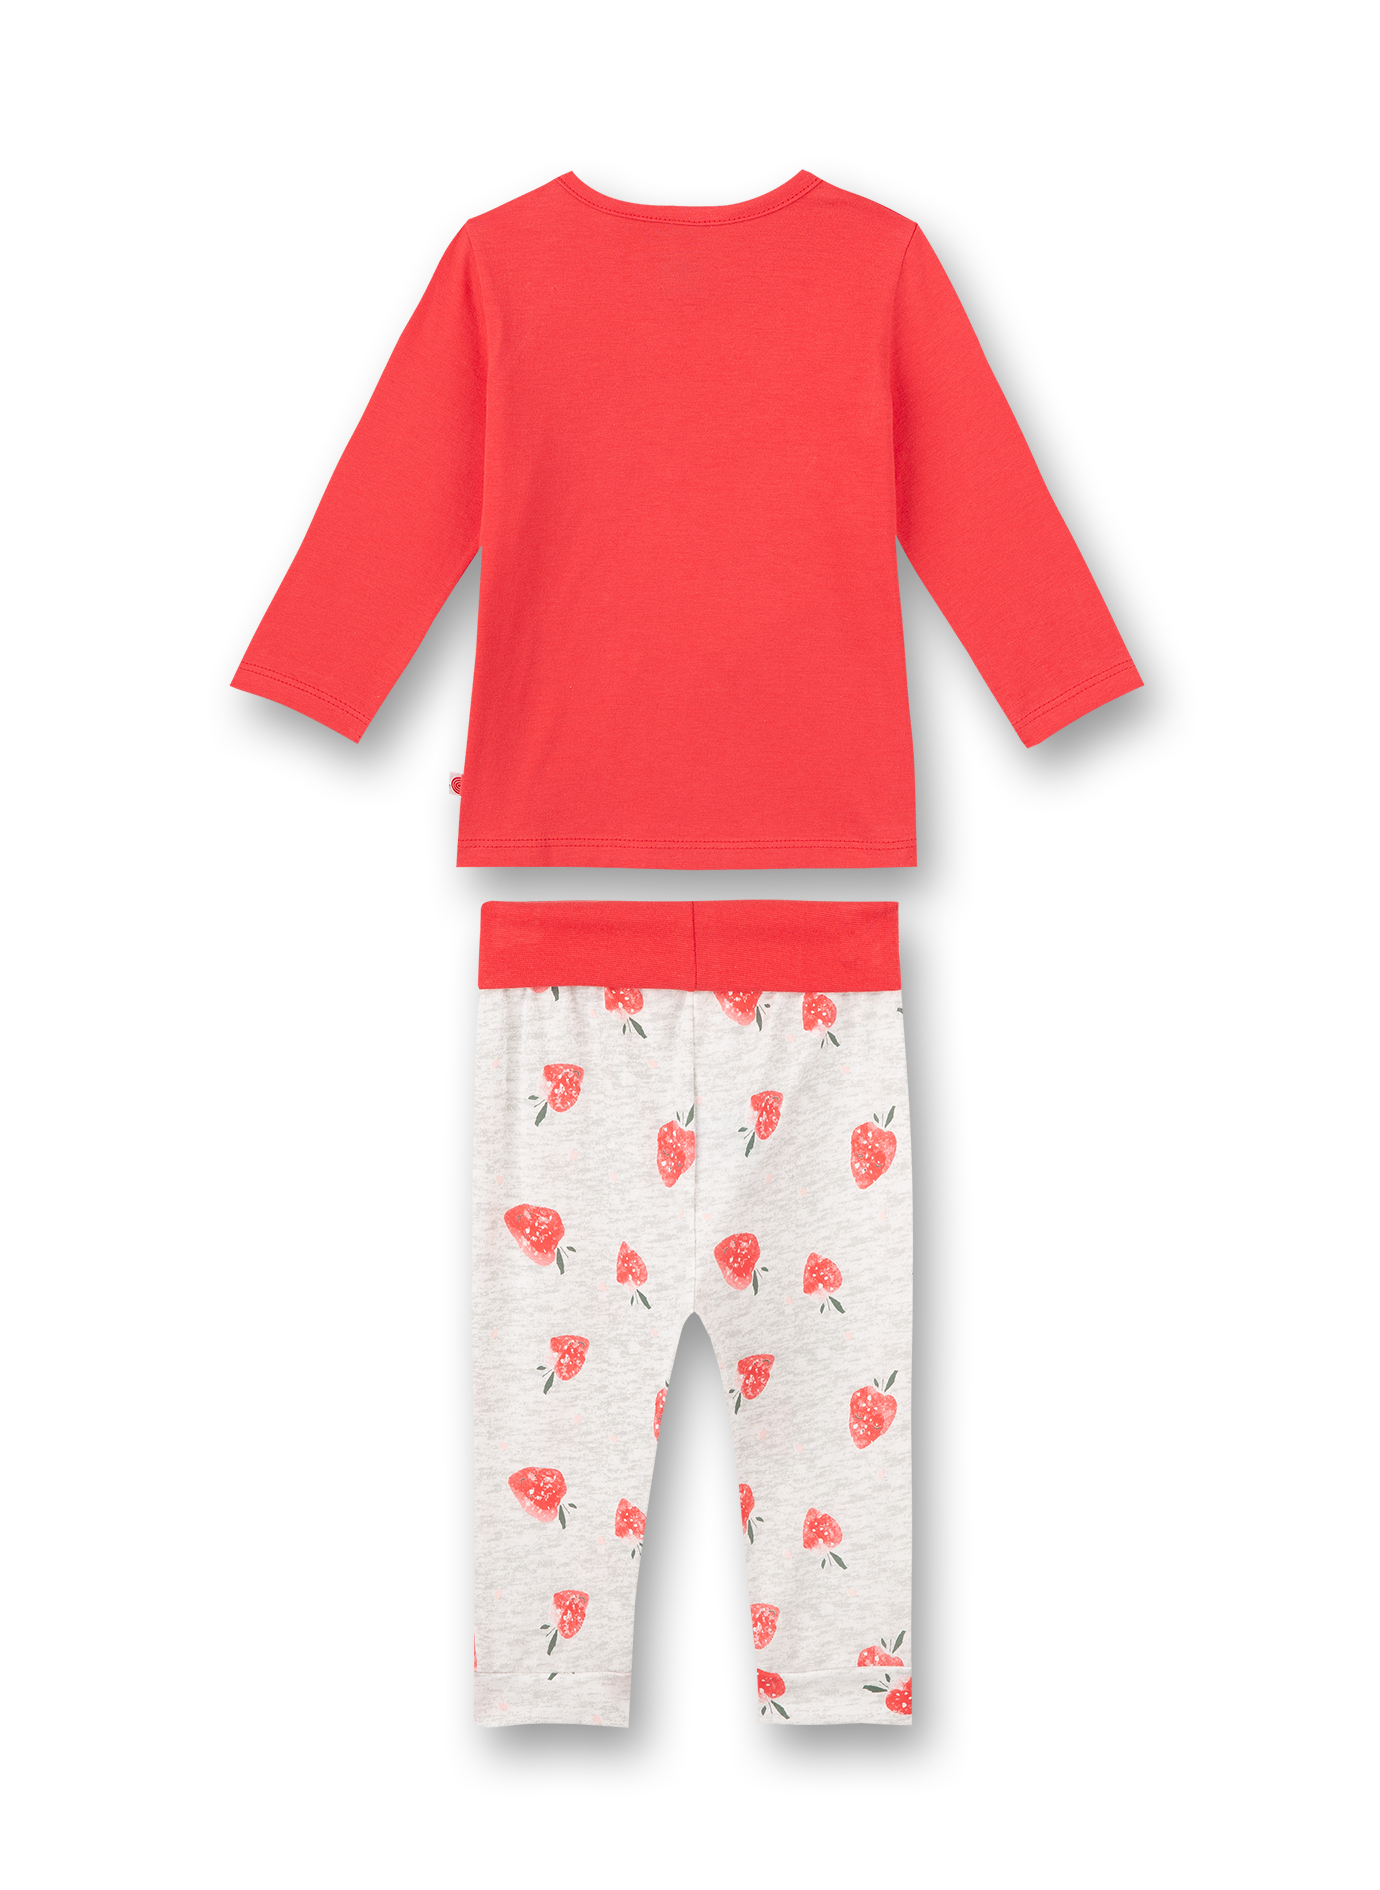 Mädchen-Schlafanzug lang Rot Cutie Pie